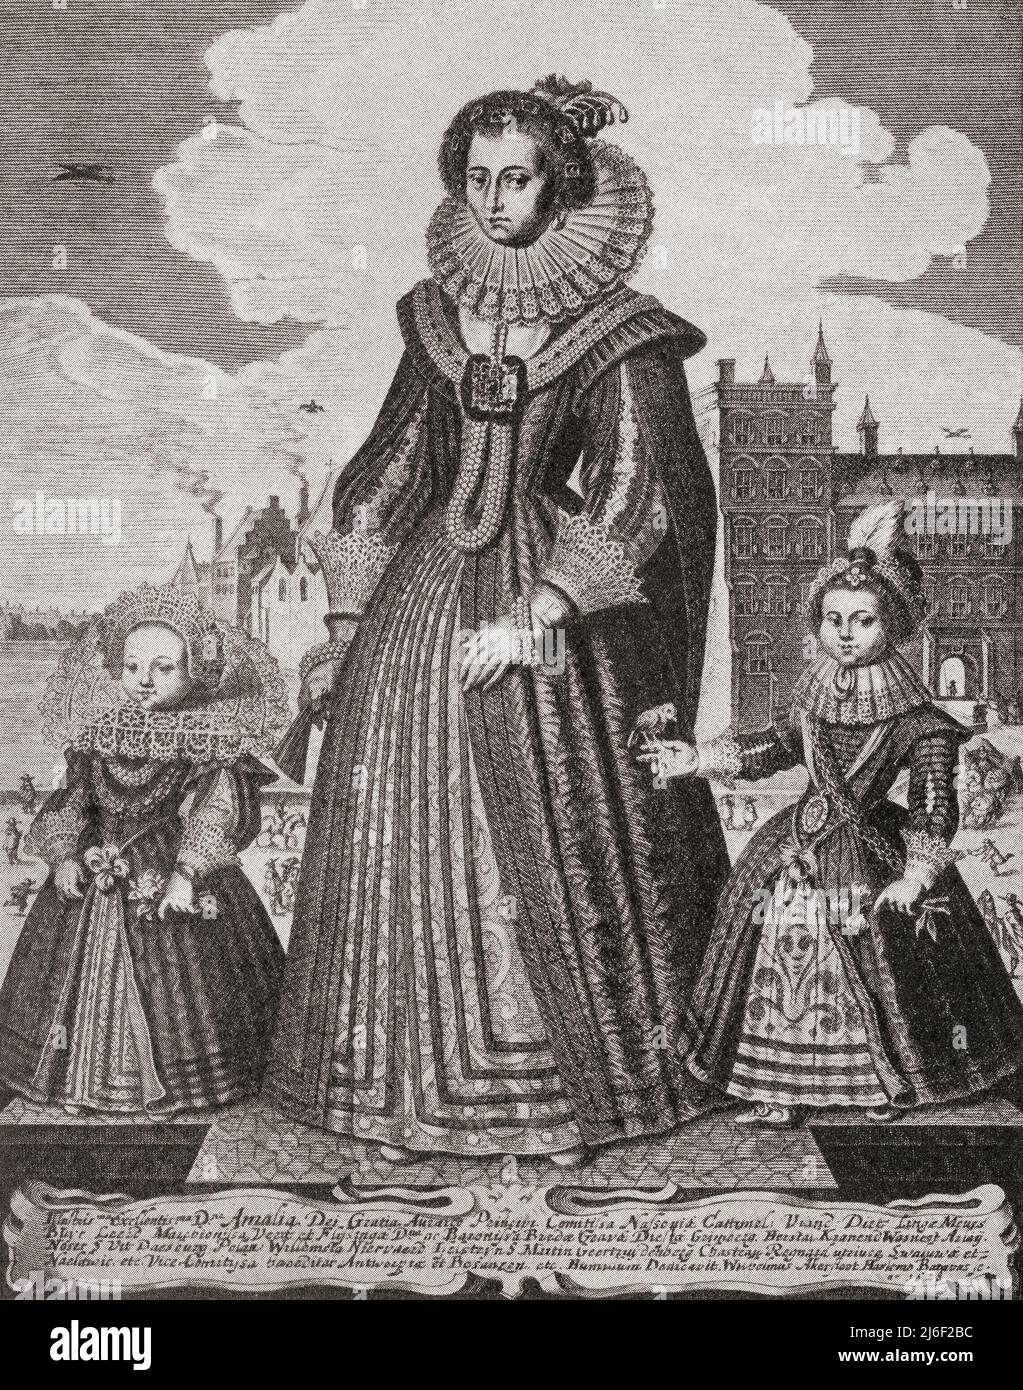 Amalia von Solms-Braunfels, 1602 – 1675. Prinzessin von Orange durch ihre Ehe mit Friedrich Henry, Prinz von Orange, hier mit ihrem Sohn und ihrer Tochter gesehen. Aus Modes and Manners, veröffentlicht 1935. Stockfoto